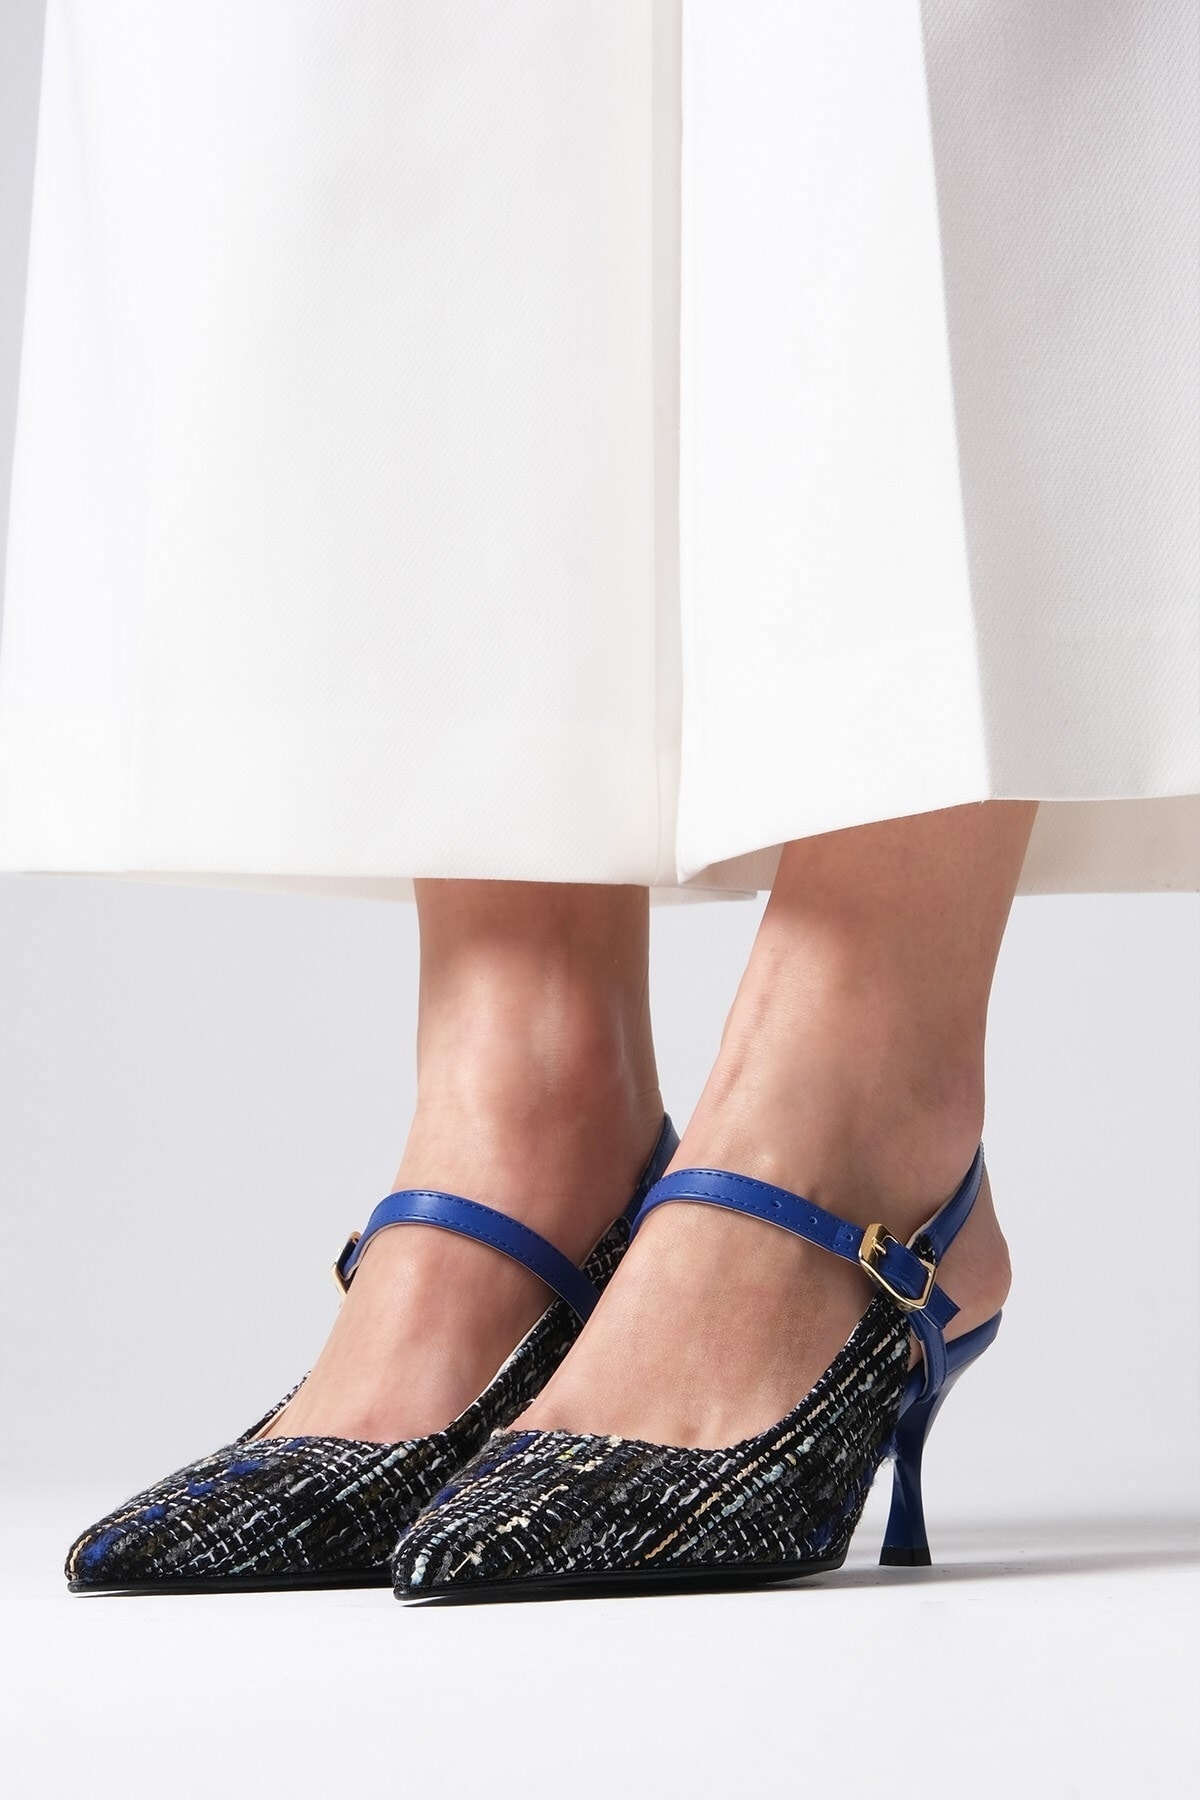 Mio Gusto Tamara Lacivert Renk Tüvit Kumaş Kadın Topuklu Ayakkabı